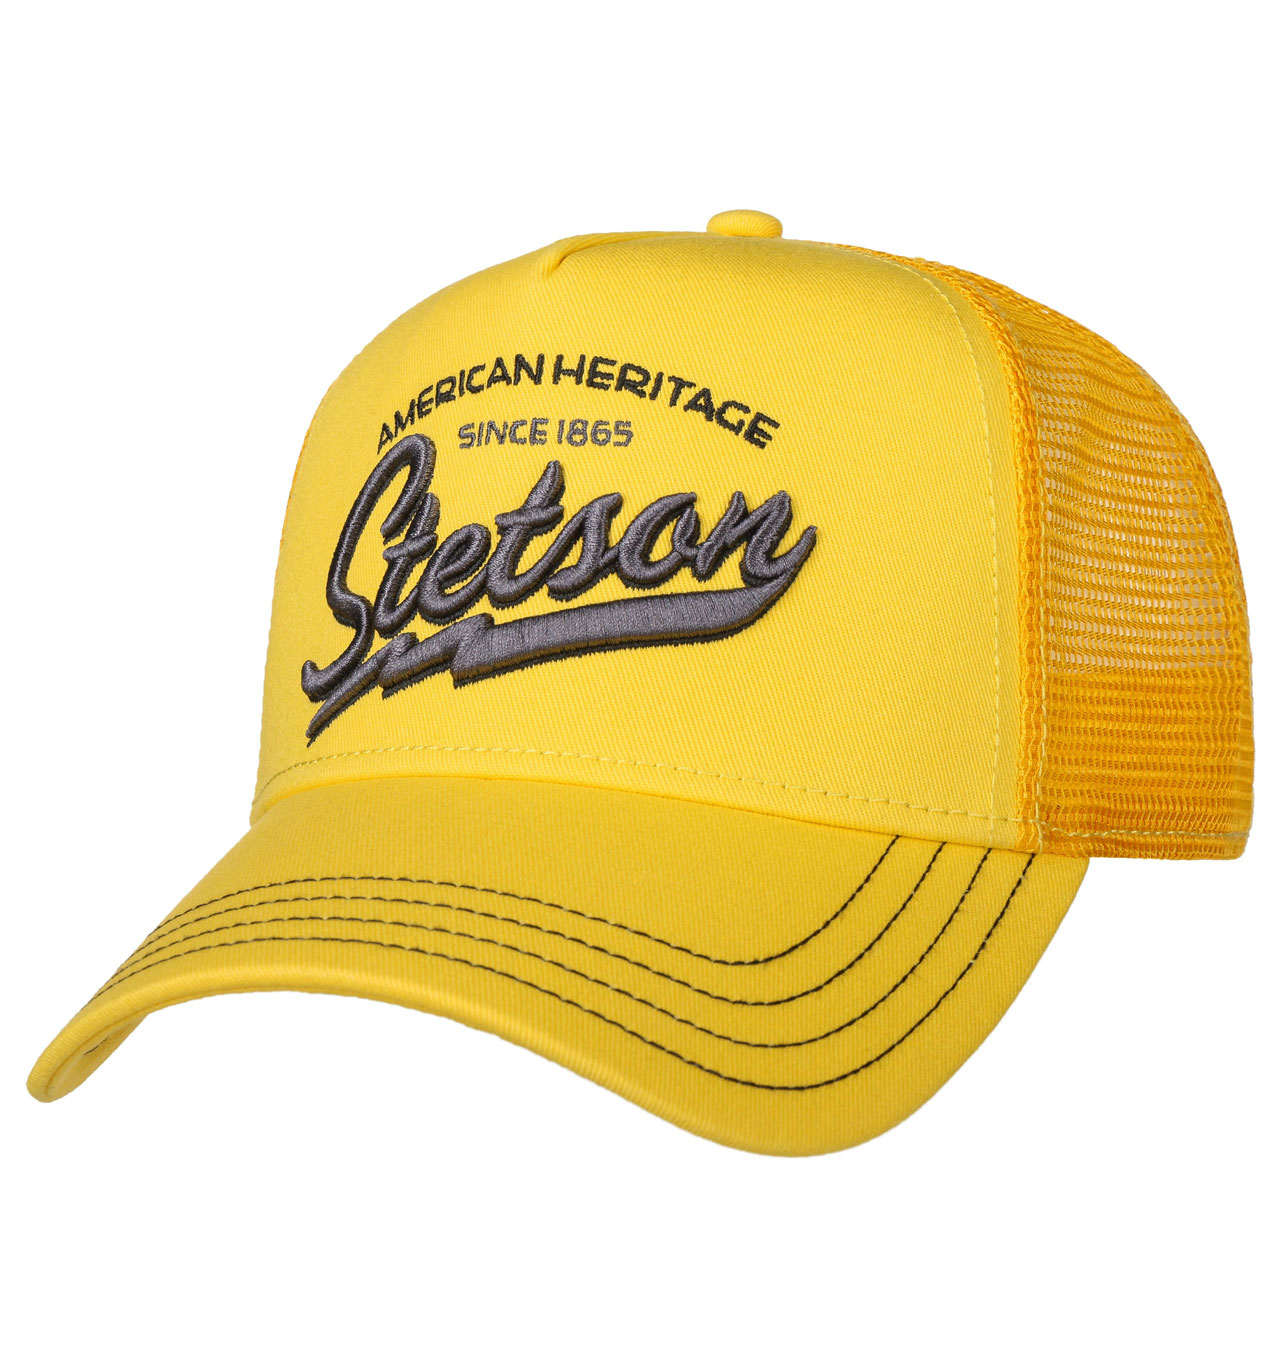 Stetson - Since 1865 Trucker Cap - Yellow